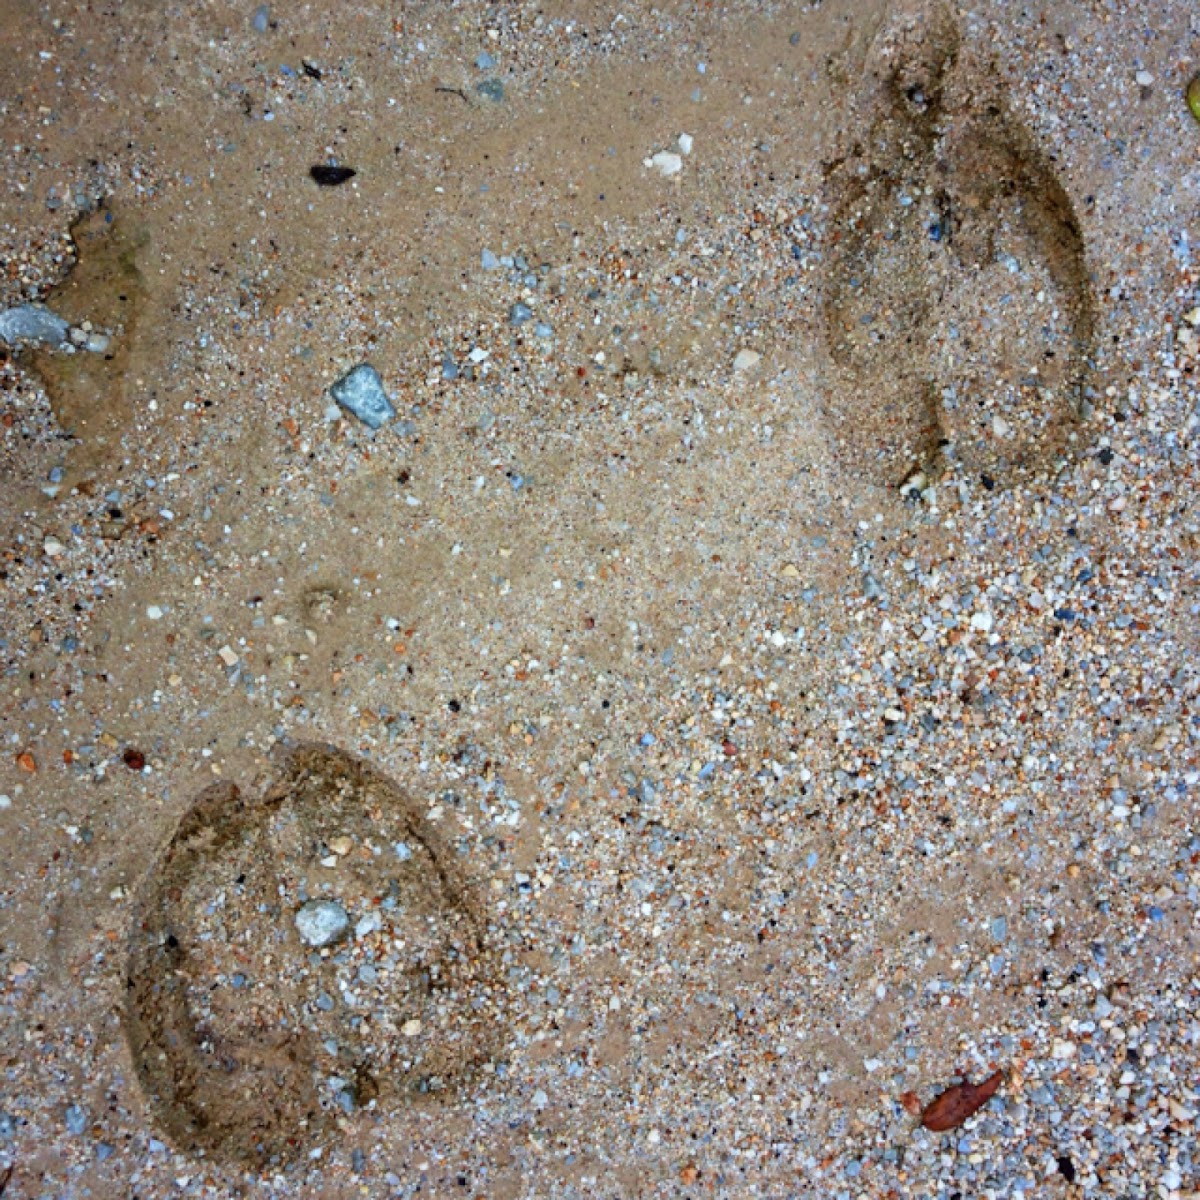 Elk tracks